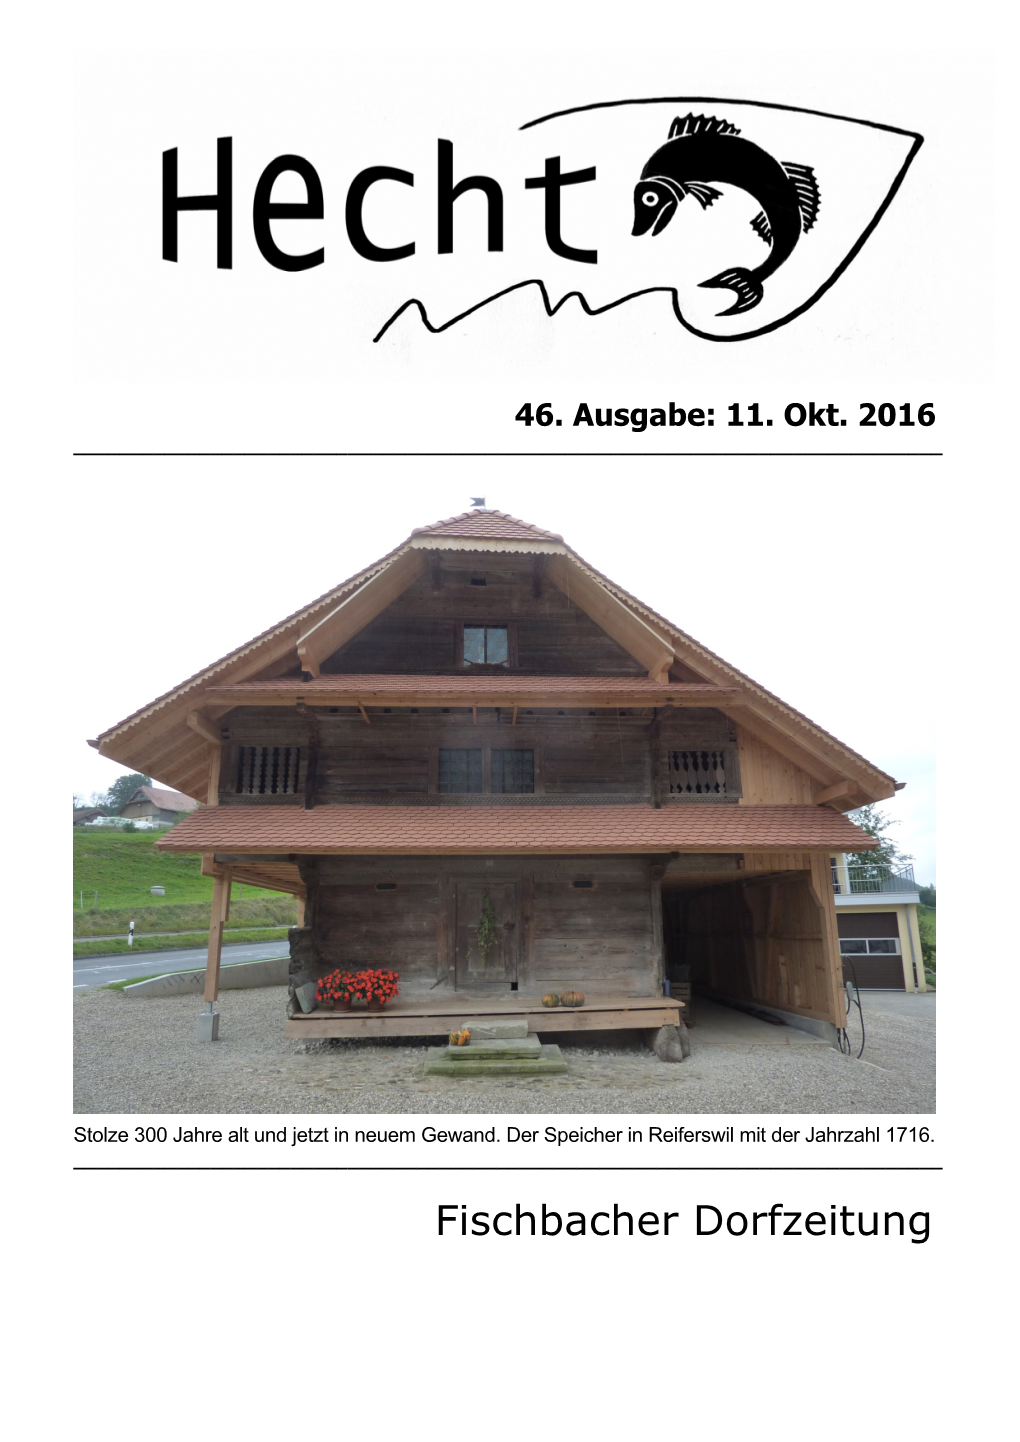 Fischbacher Dorfzeitung